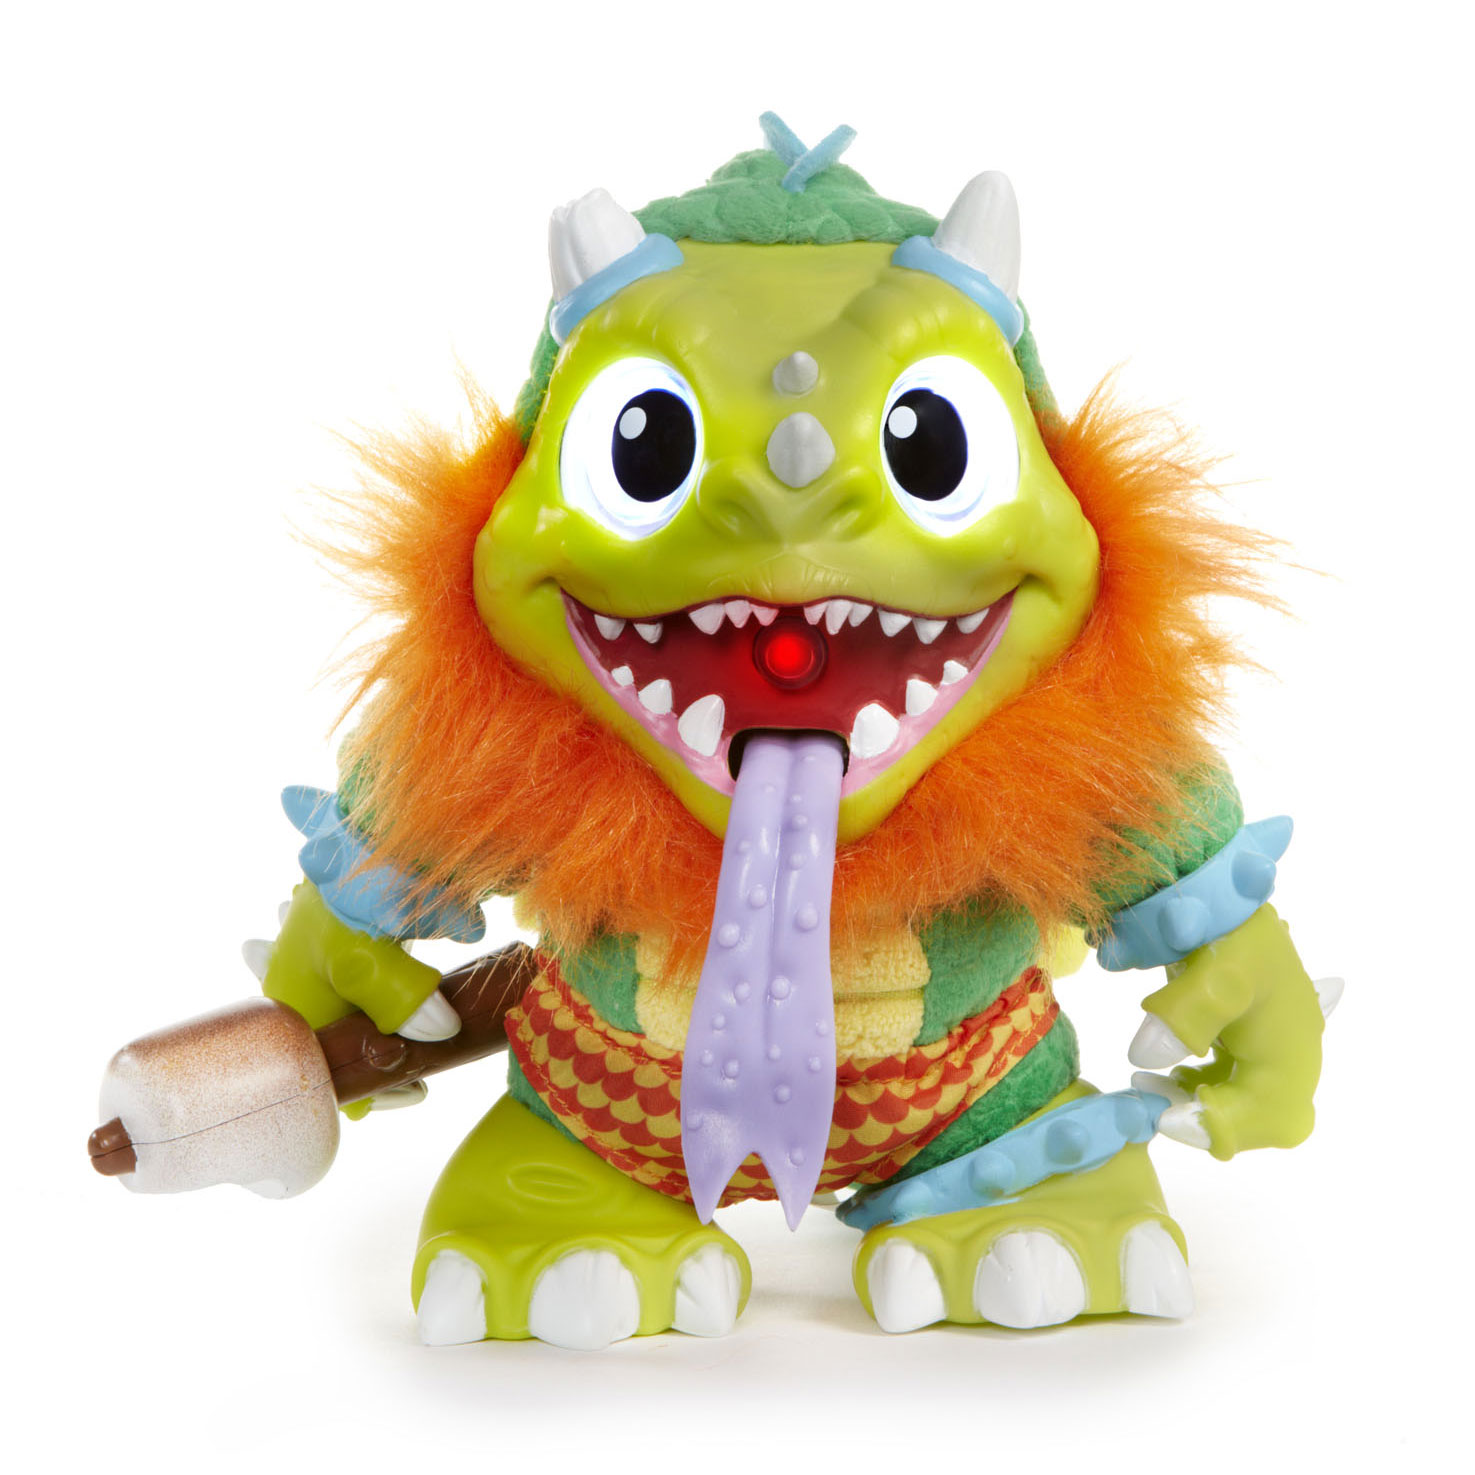 reflecteren Hilarisch Optimisme Crate Creatures Surprise Monster - Sizzle | Thimble Toys